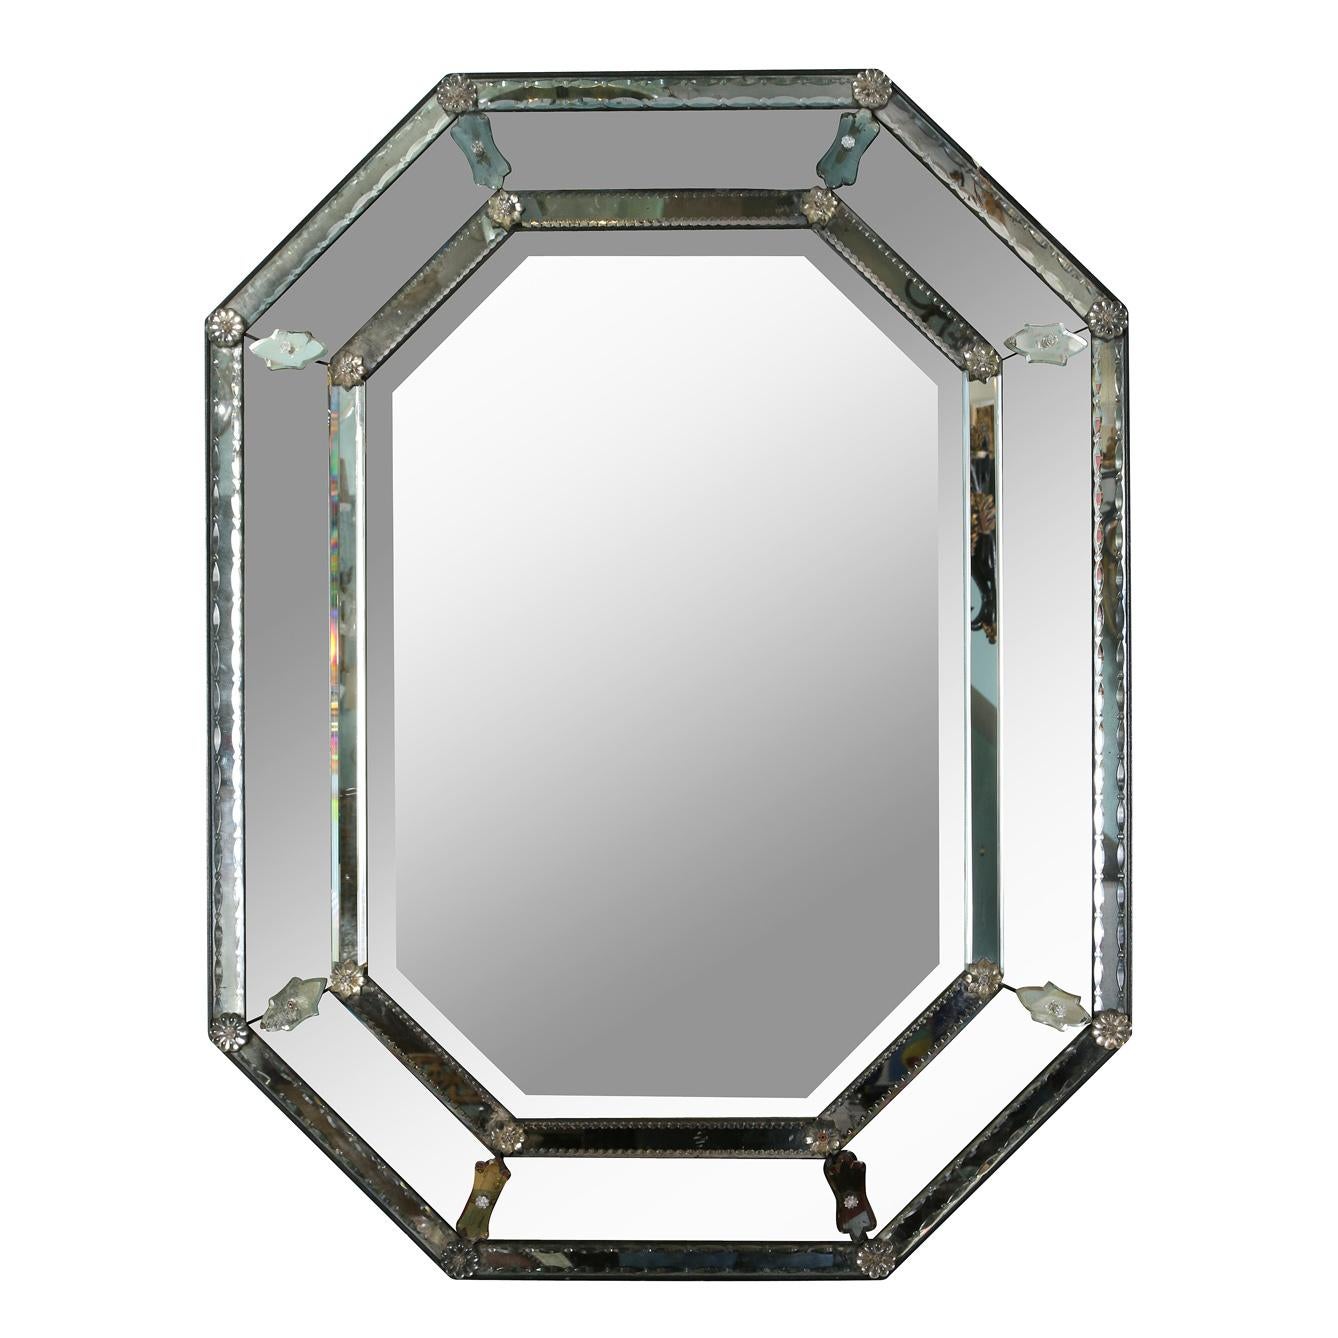 Un miroir vénitien octogonal à facettes vintage avec deux belles bandes de plaques de miroir détaillées qui scintillent avec un bord à motif complexe sur chaque bande.  Le double bandeau entoure des plaques miroirs en angle avec des détails